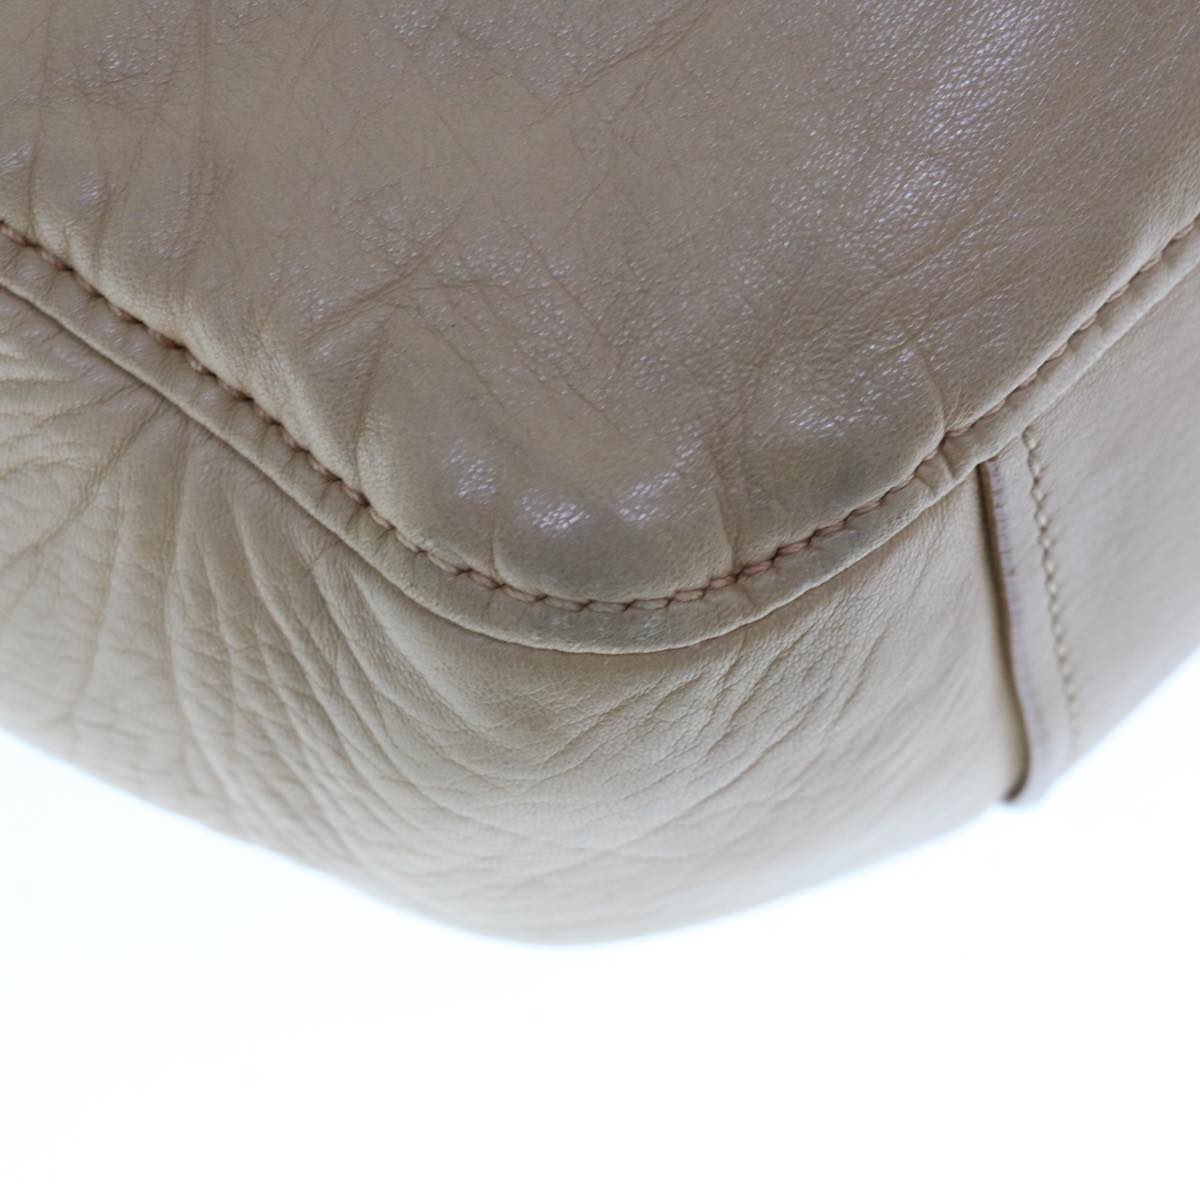 Miu Miu Hand Bag Leather Beige Auth 64848